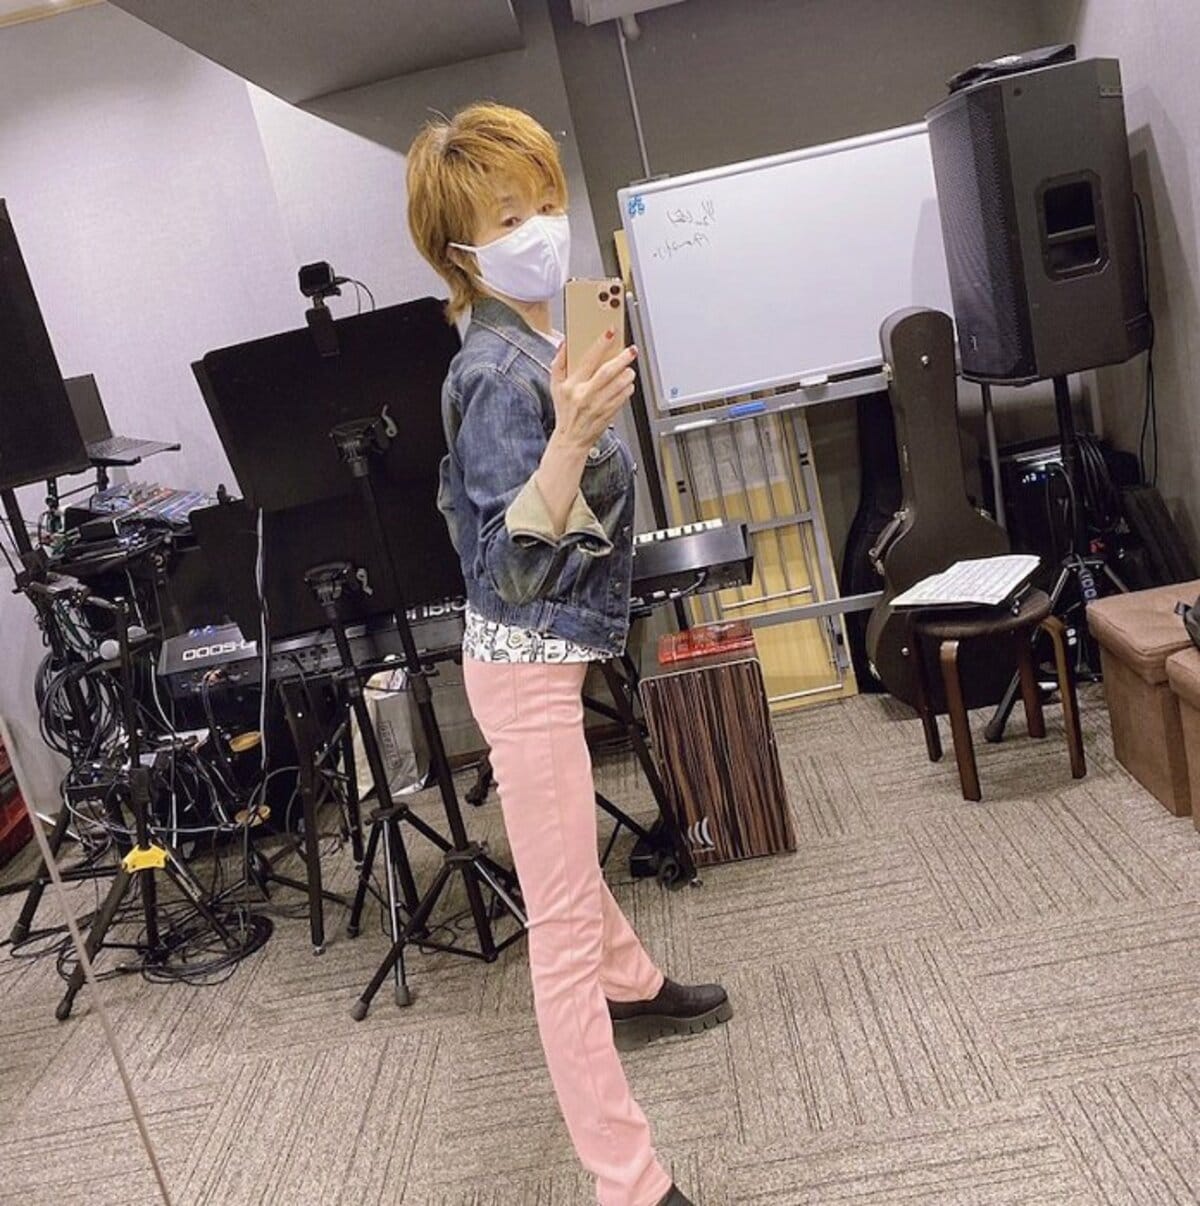 小柳ルミ子『ユニクロ』のキッズサイズのパンツを穿いた姿を公開